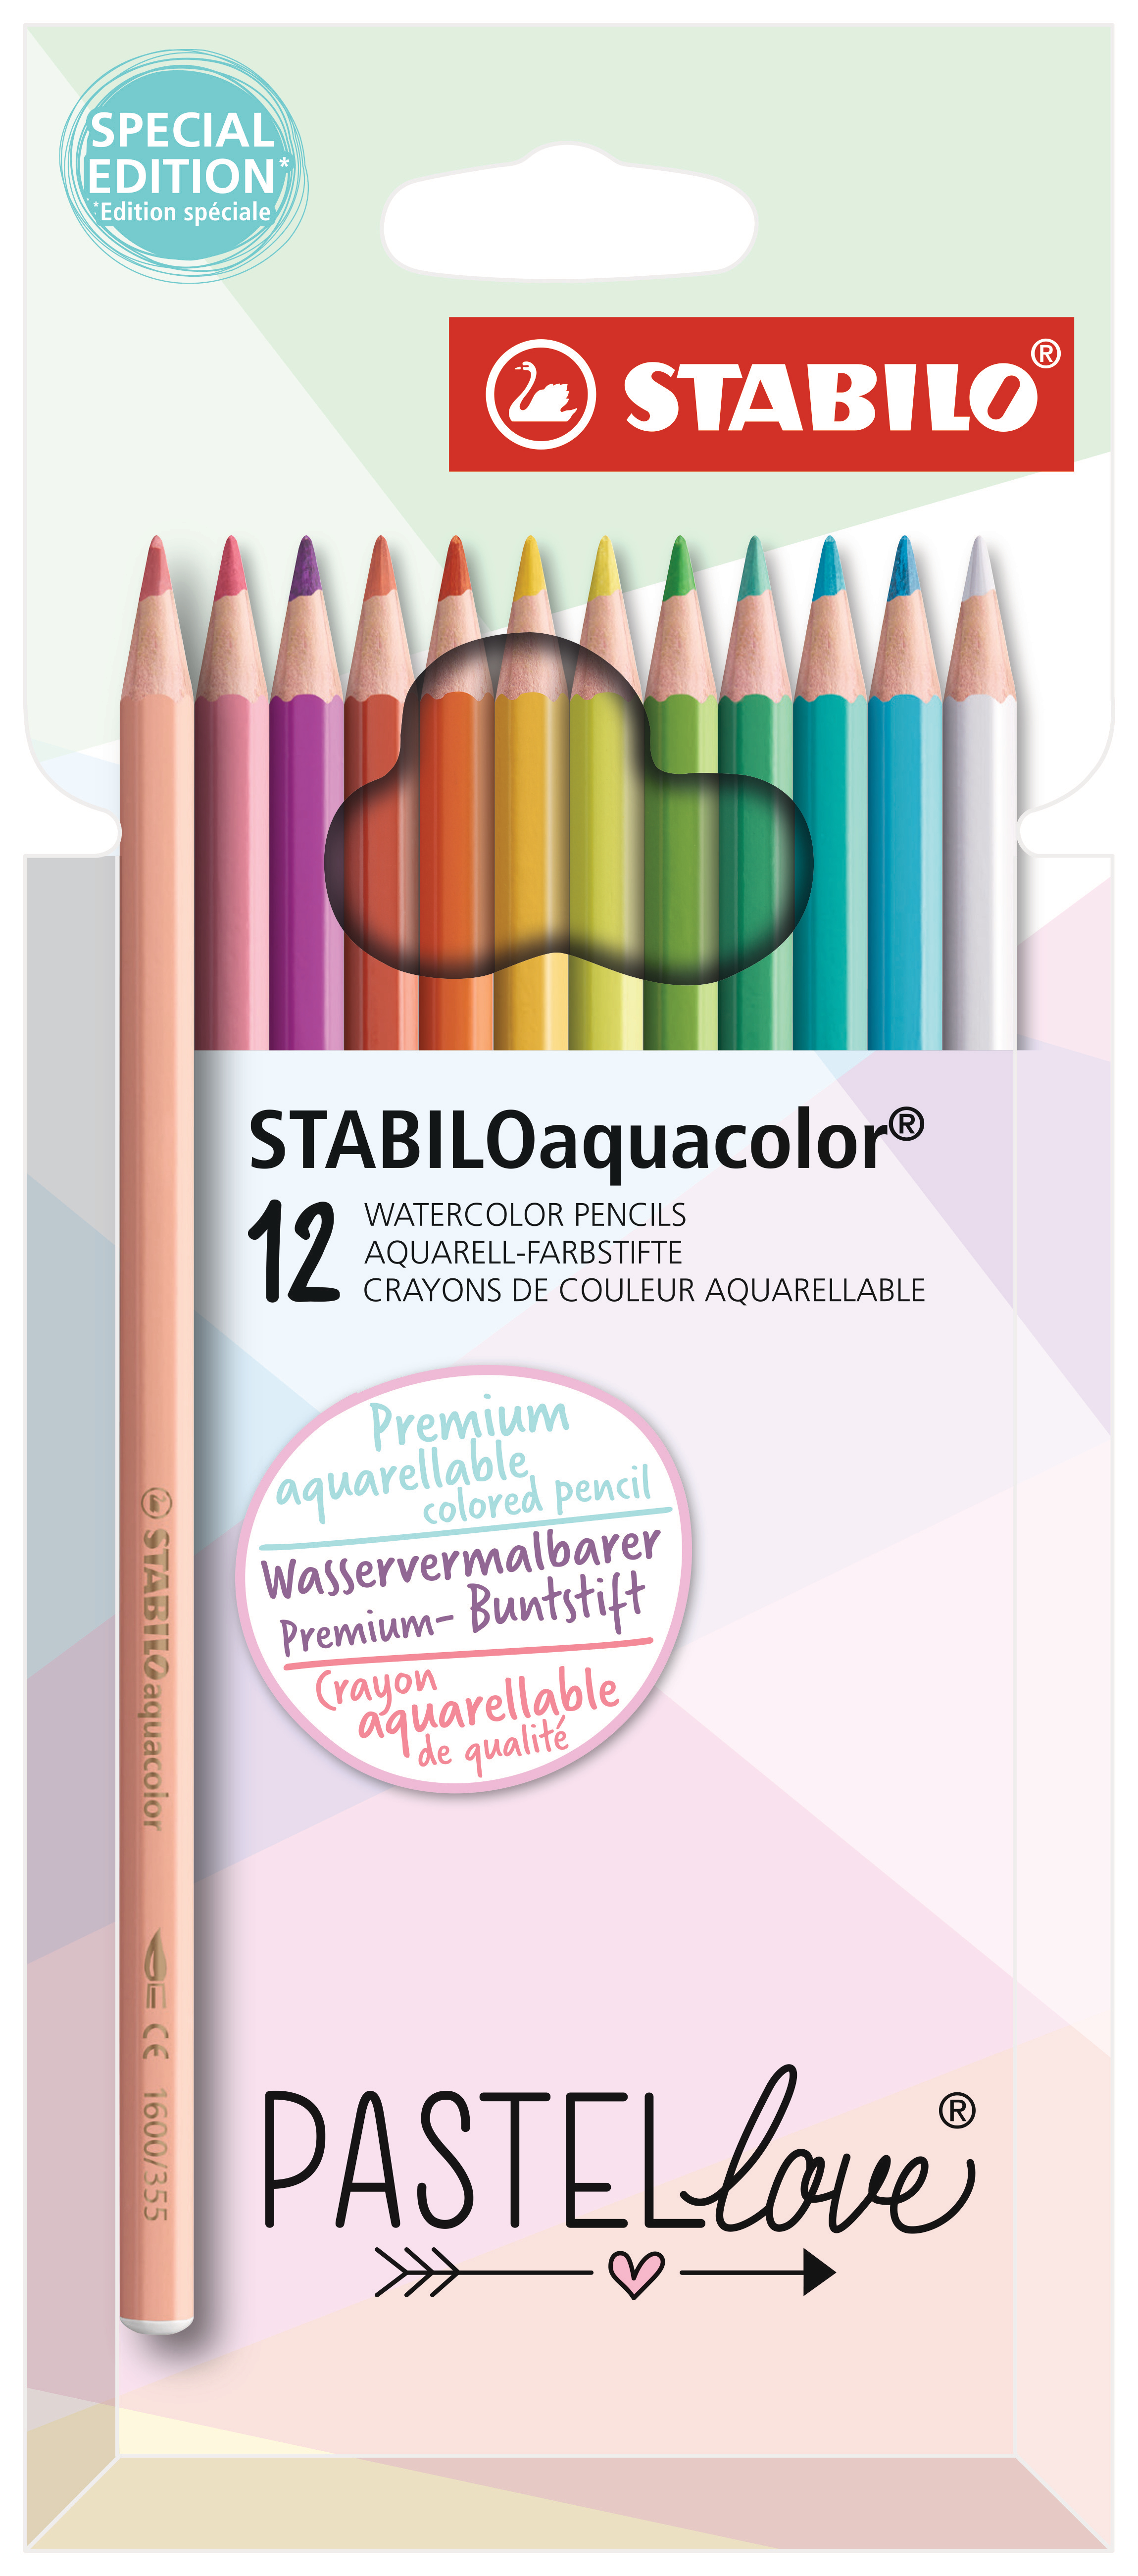 STABILO Crayon coul. Aquacolor 2.8mm 1612/7 Pastellove 12 pcs.